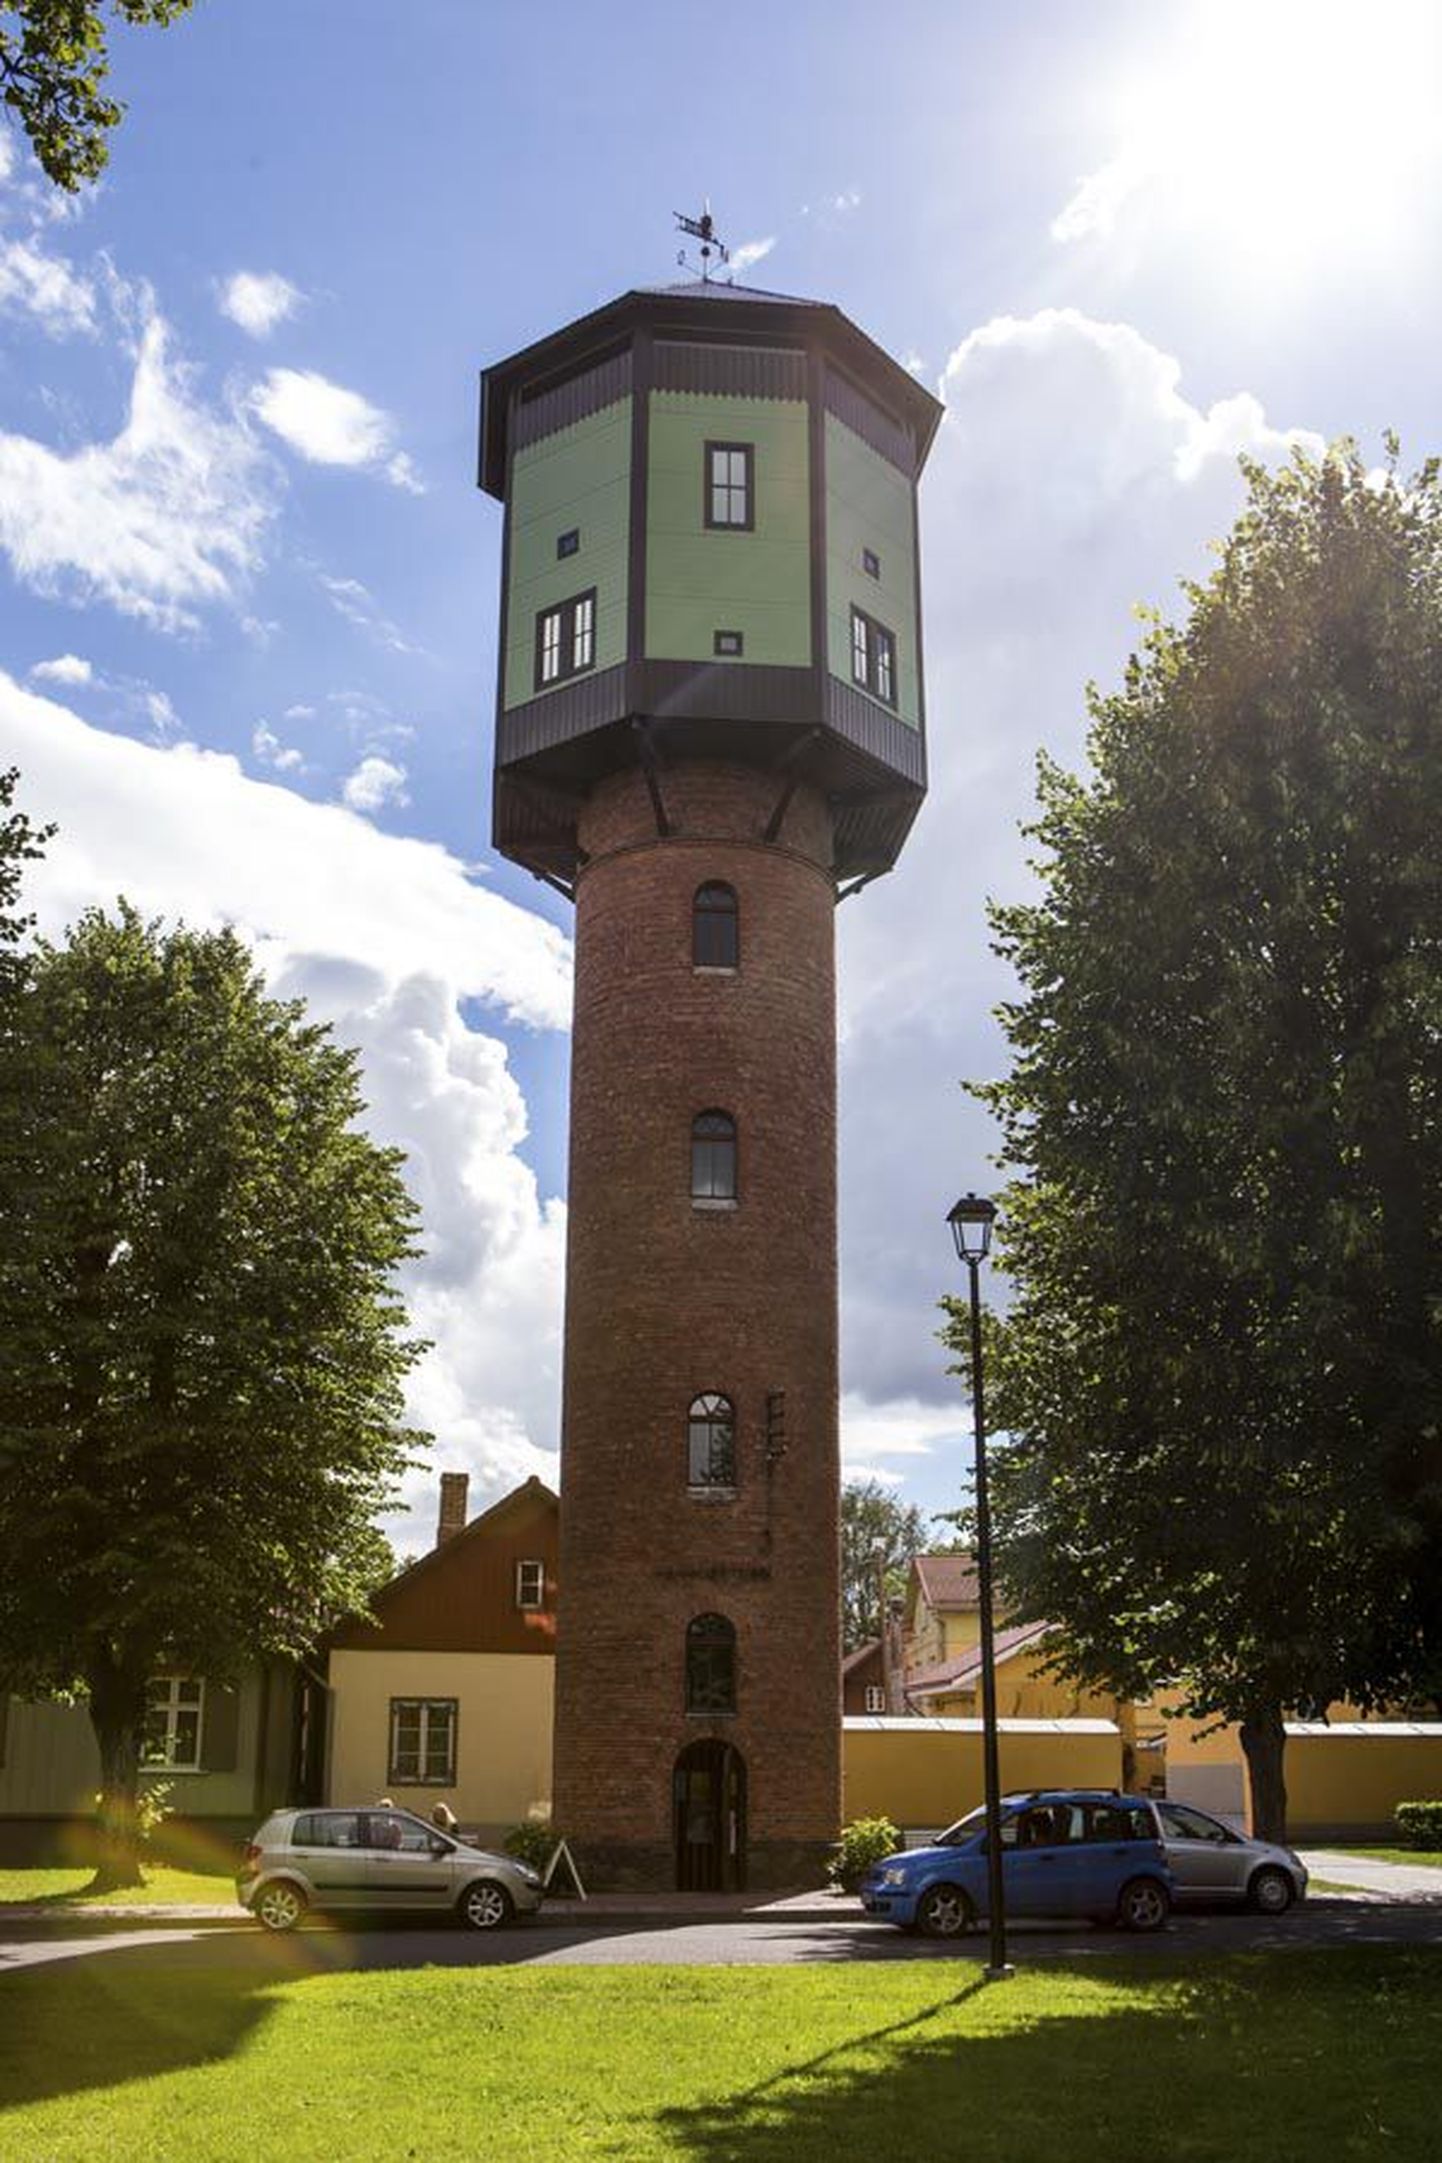 Sajandivahetusel taastatud veetorn on kasutusel vaatetornina, kuhu pääseb suvel kaks eurot maksva pileti eest. Pole teada, mis võiks muutuda, kui tornist saab muuseumi osa.